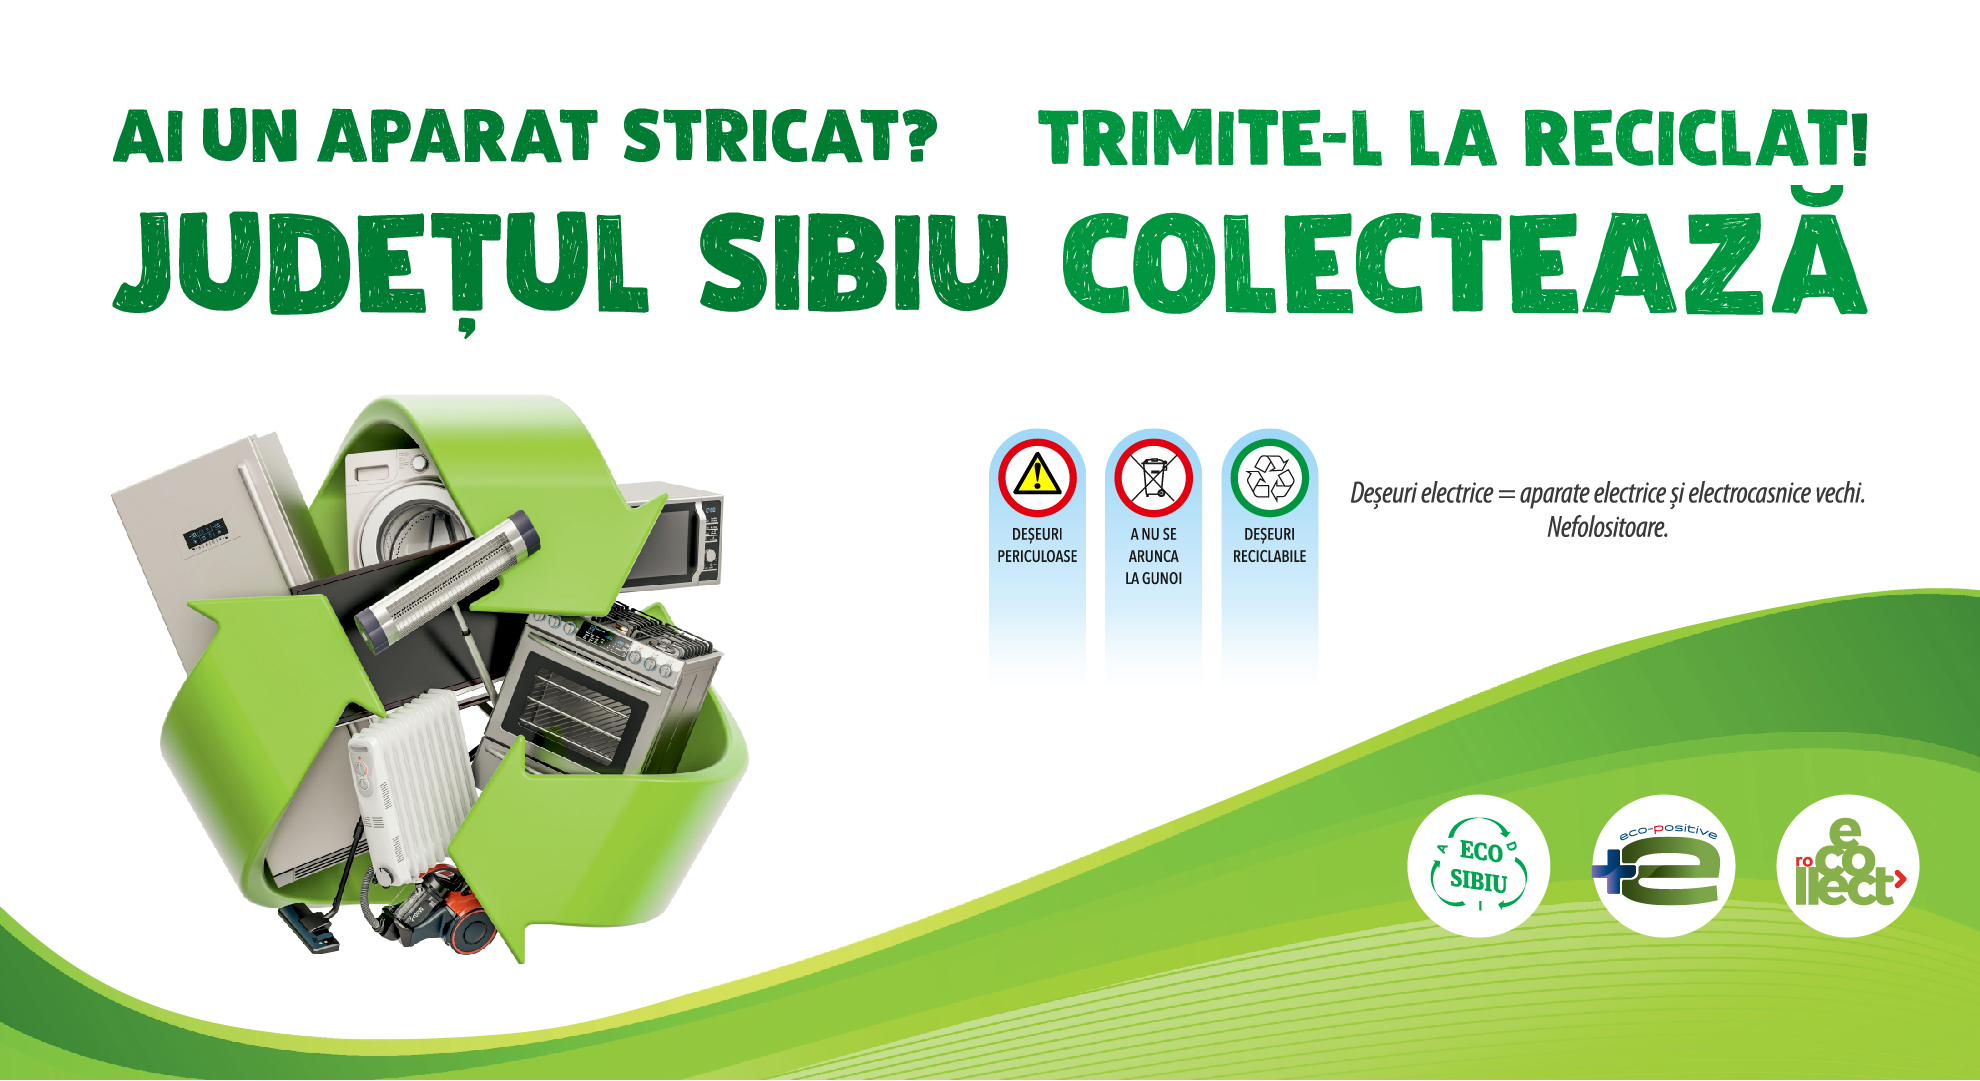 ADI ECO Sibiu organizează o campanie de colectare a deșeurilor de echipamente electrice și electronice în județul Sibiu. Programul acțiunilor